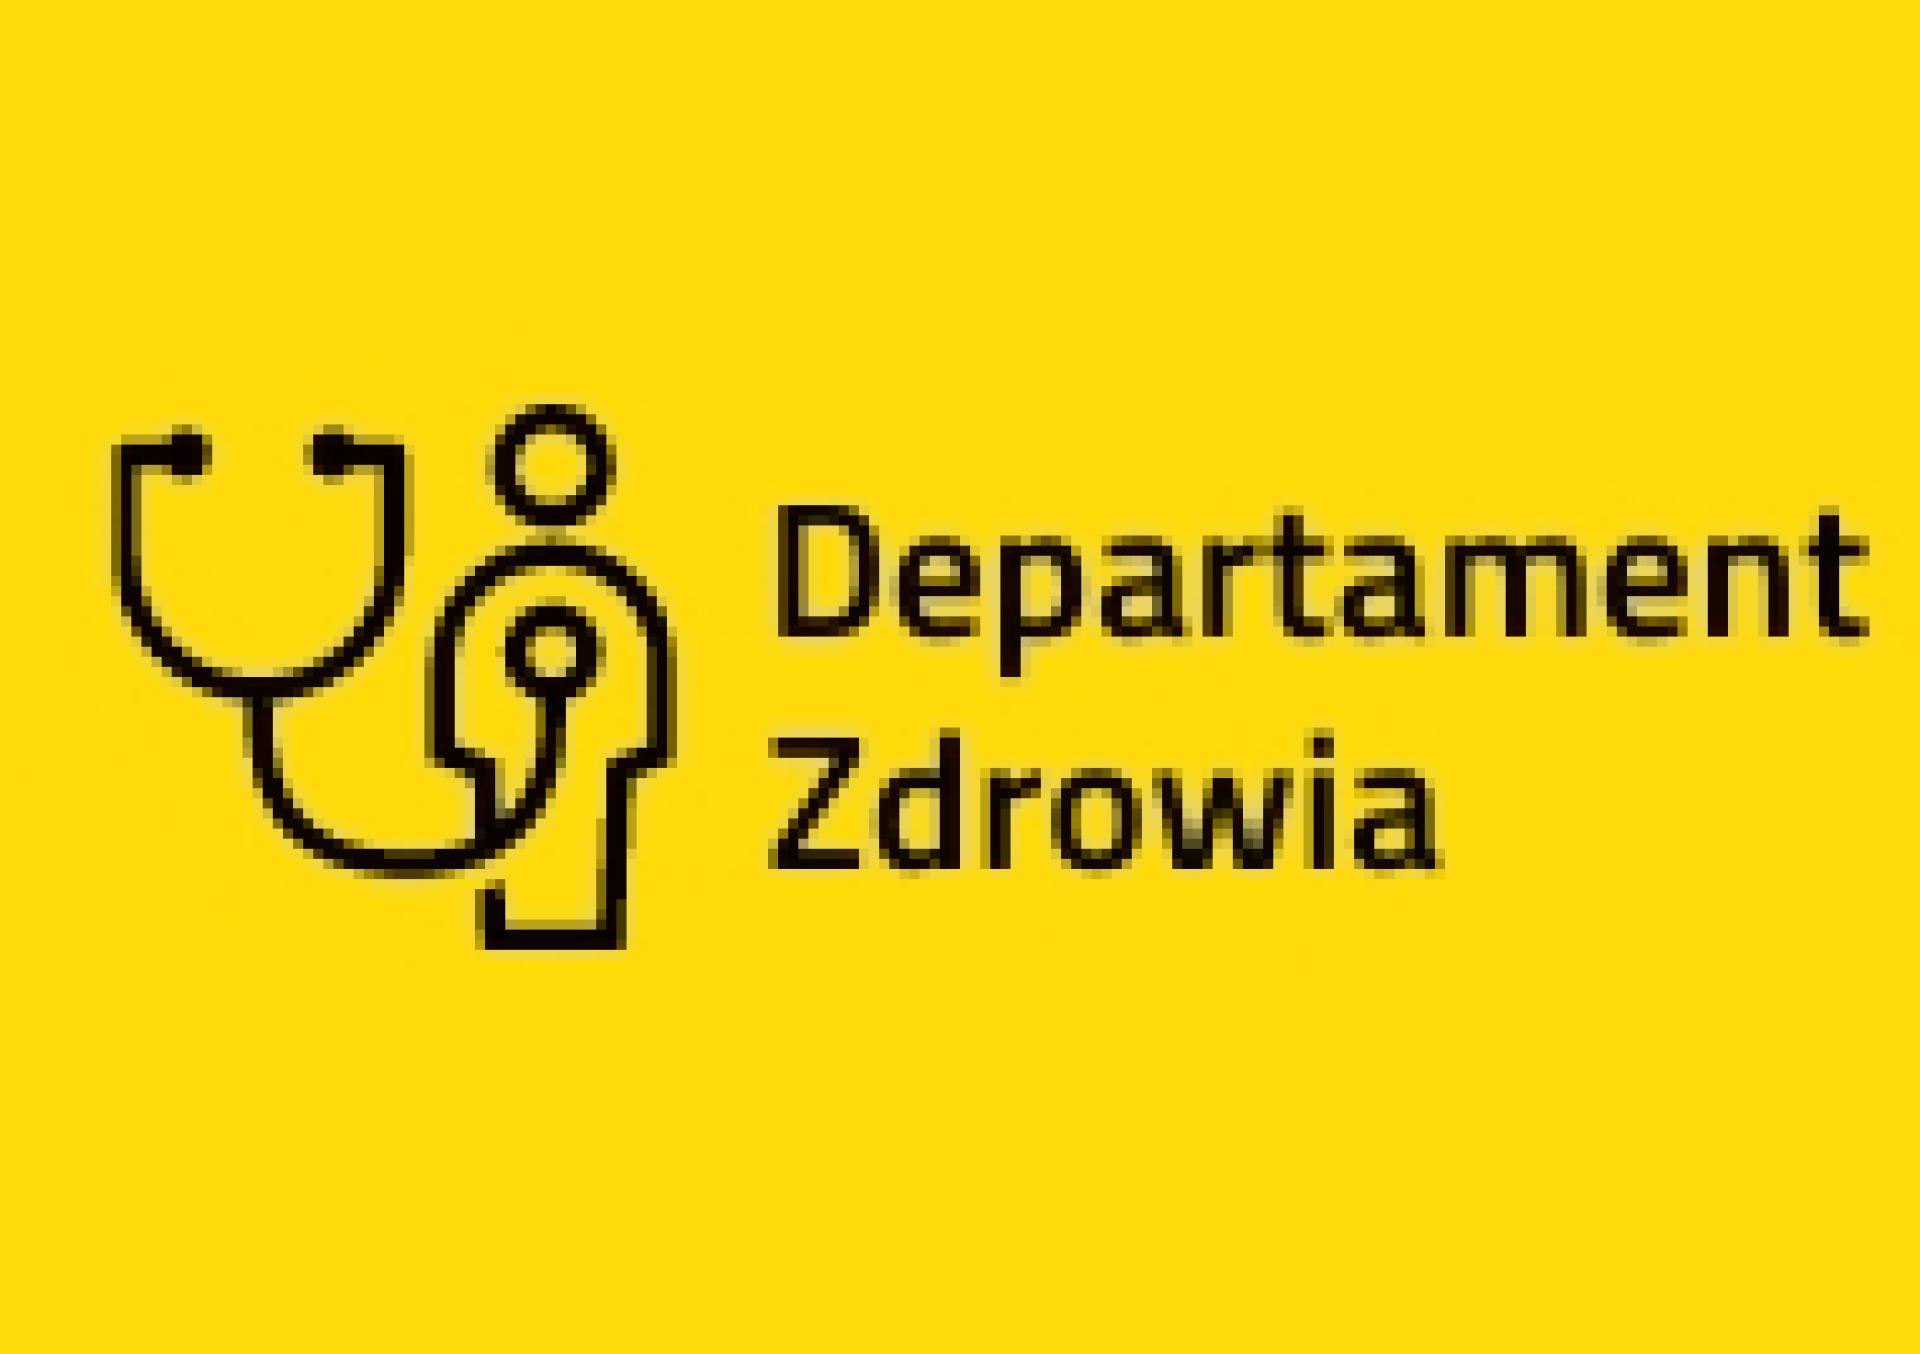 Prace nad zmianą nazwy Wojewódzkiego Szpitala Neuropsychiatrycznego w Kościanie oraz nadaniem statutu Wielkopolskiemu Centrum Neuropsychiatrycznemu w Kościanie - zobacz więcej